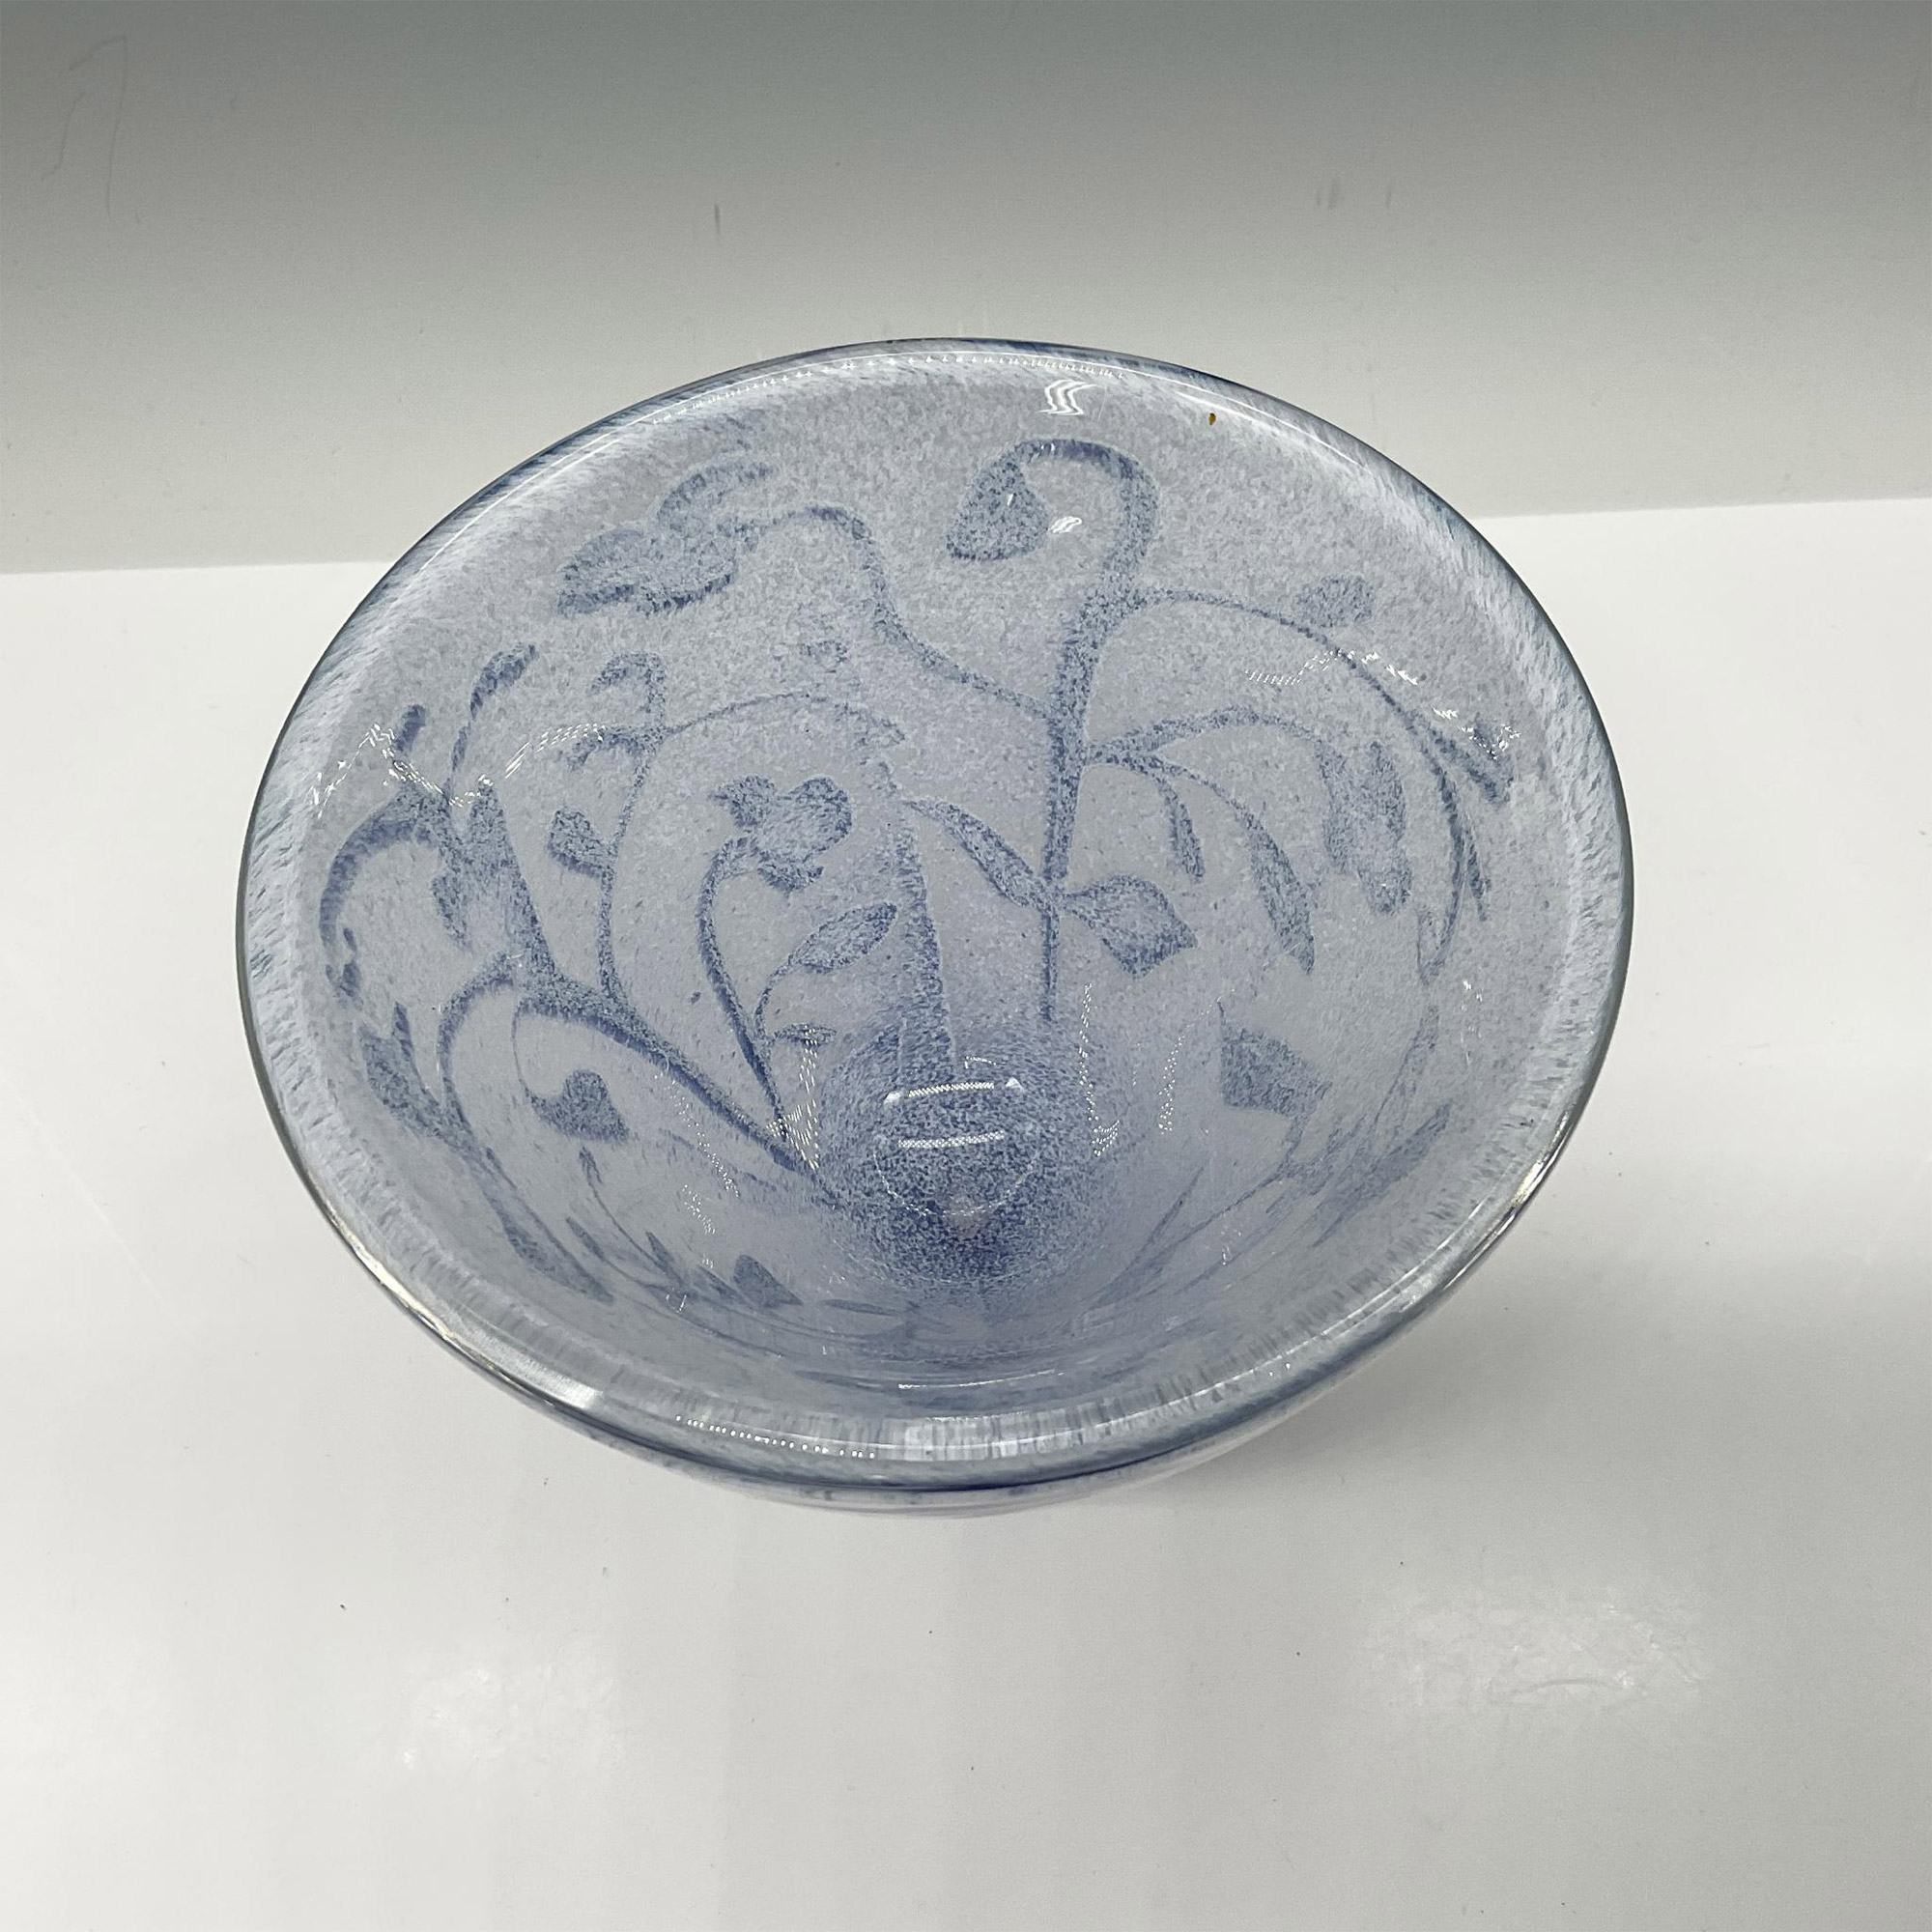 Kosta Boda Art Glass Floating Blue Flowers Vase - Image 2 of 3